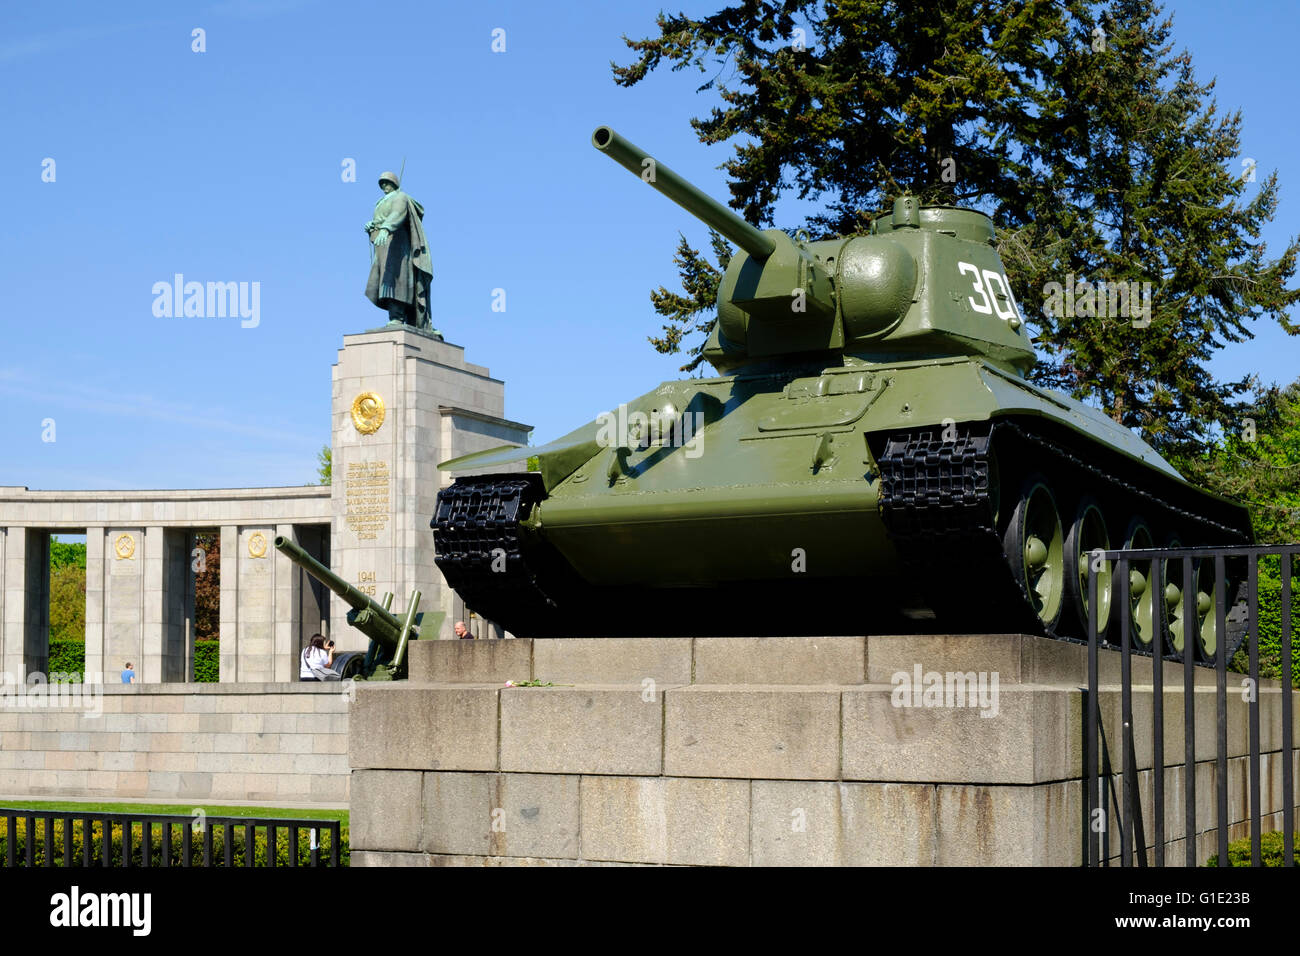 Vue du réservoir à l'affiche au Monument commémoratif de guerre soviétique dans Tiergarten Berlin Allemagne Banque D'Images